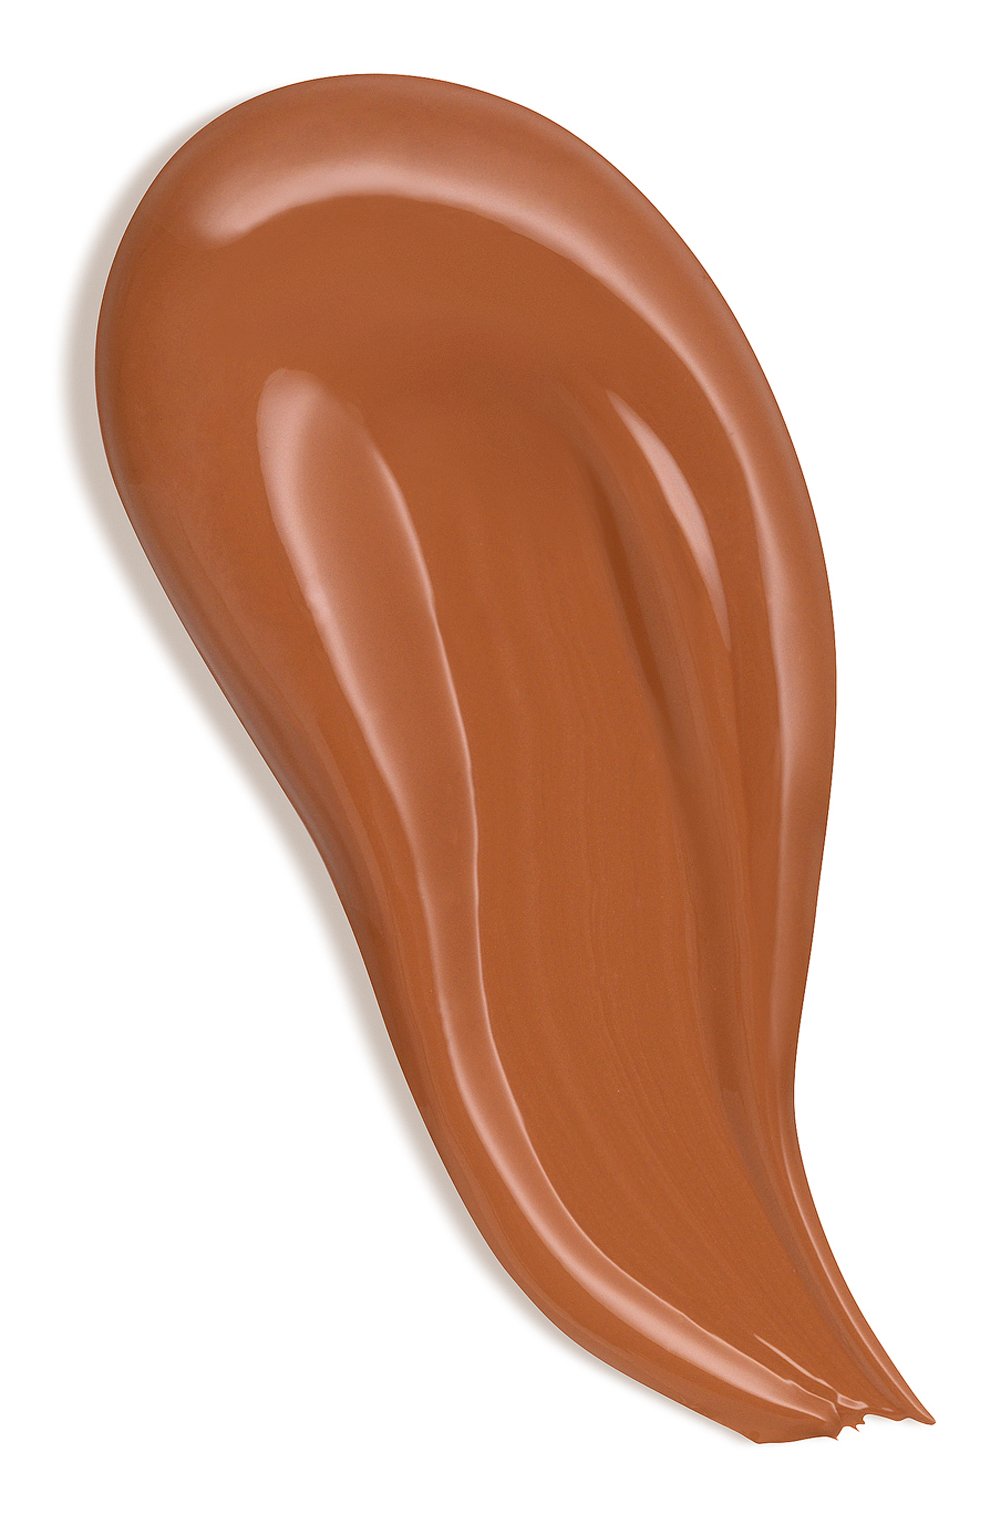 Тональный крем для лица с лифтинг эффектом, 100 fudge (25ml) RODIAL  цвета, арт. 5060027069935 | Фото 2 (Обьем косметики: 50ml)